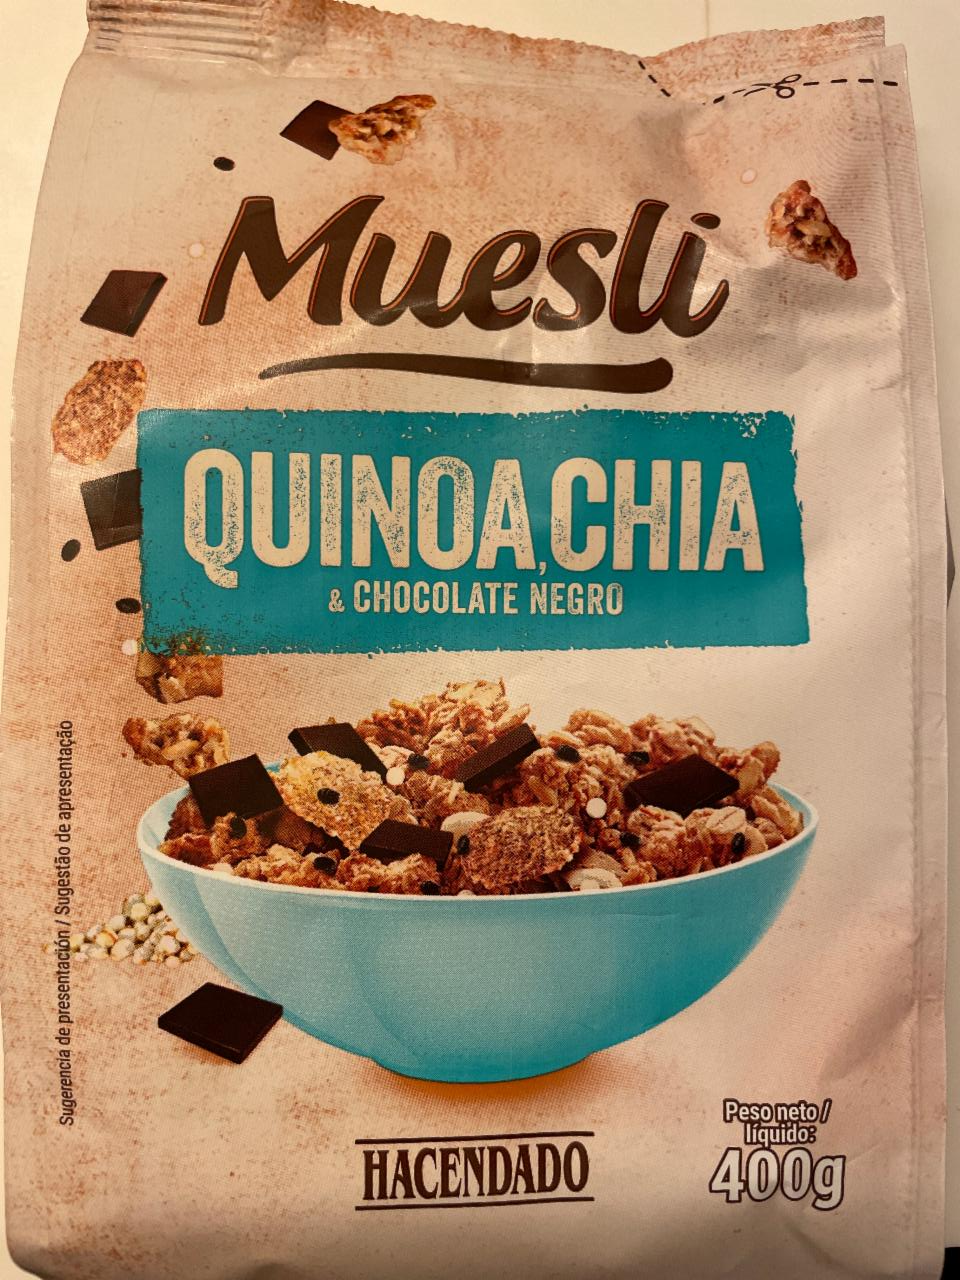 Fotografie - Muesli Quinoa, Chia & Chocolate negro Hacendado